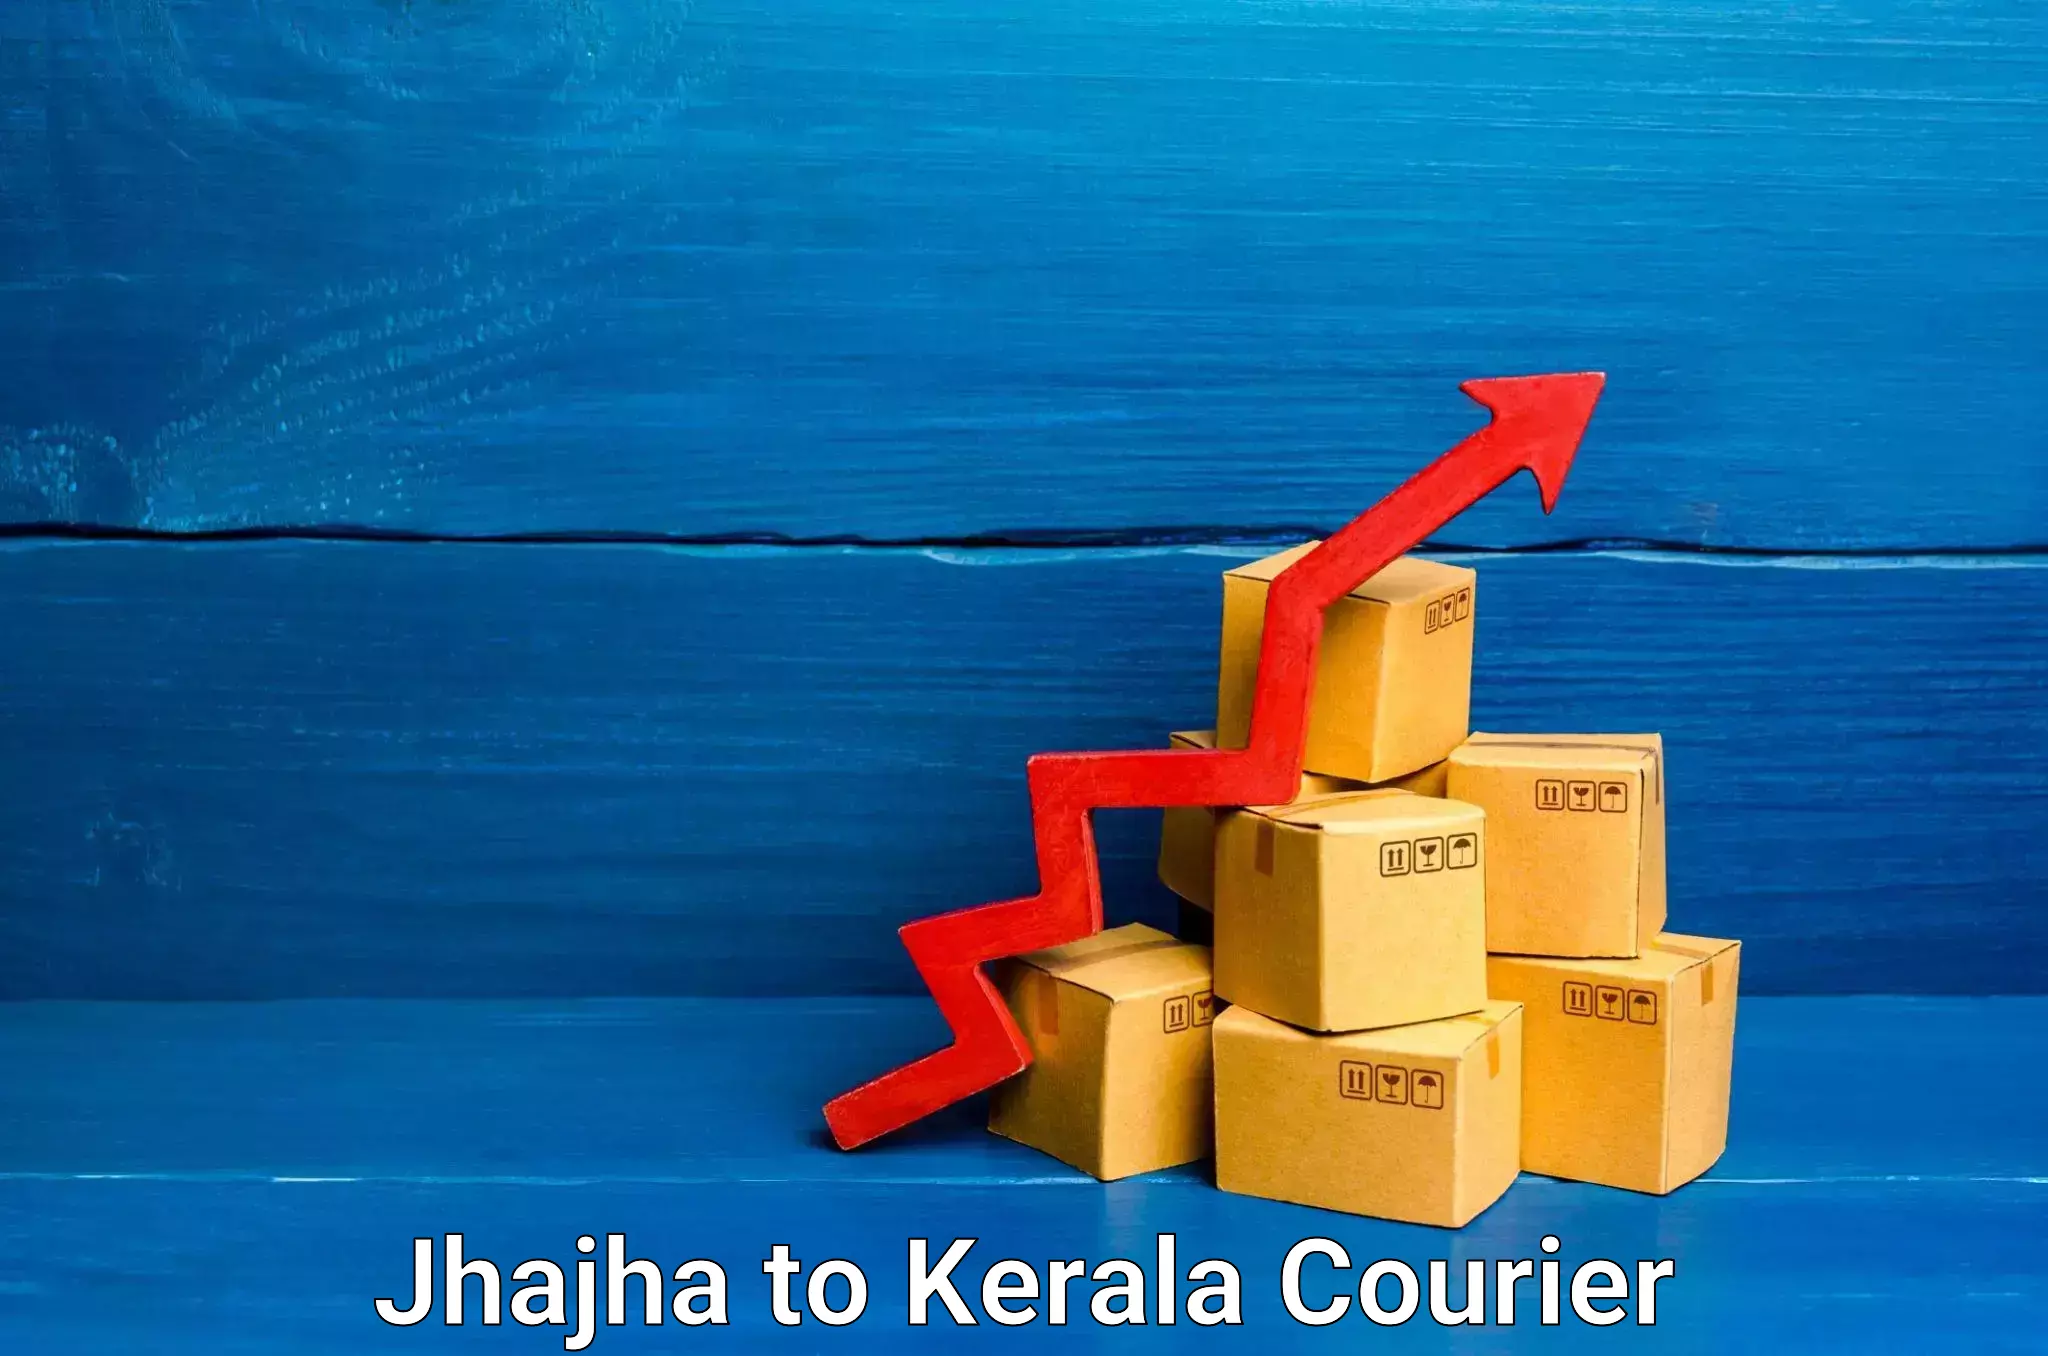 Furniture transport professionals Jhajha to Kerala